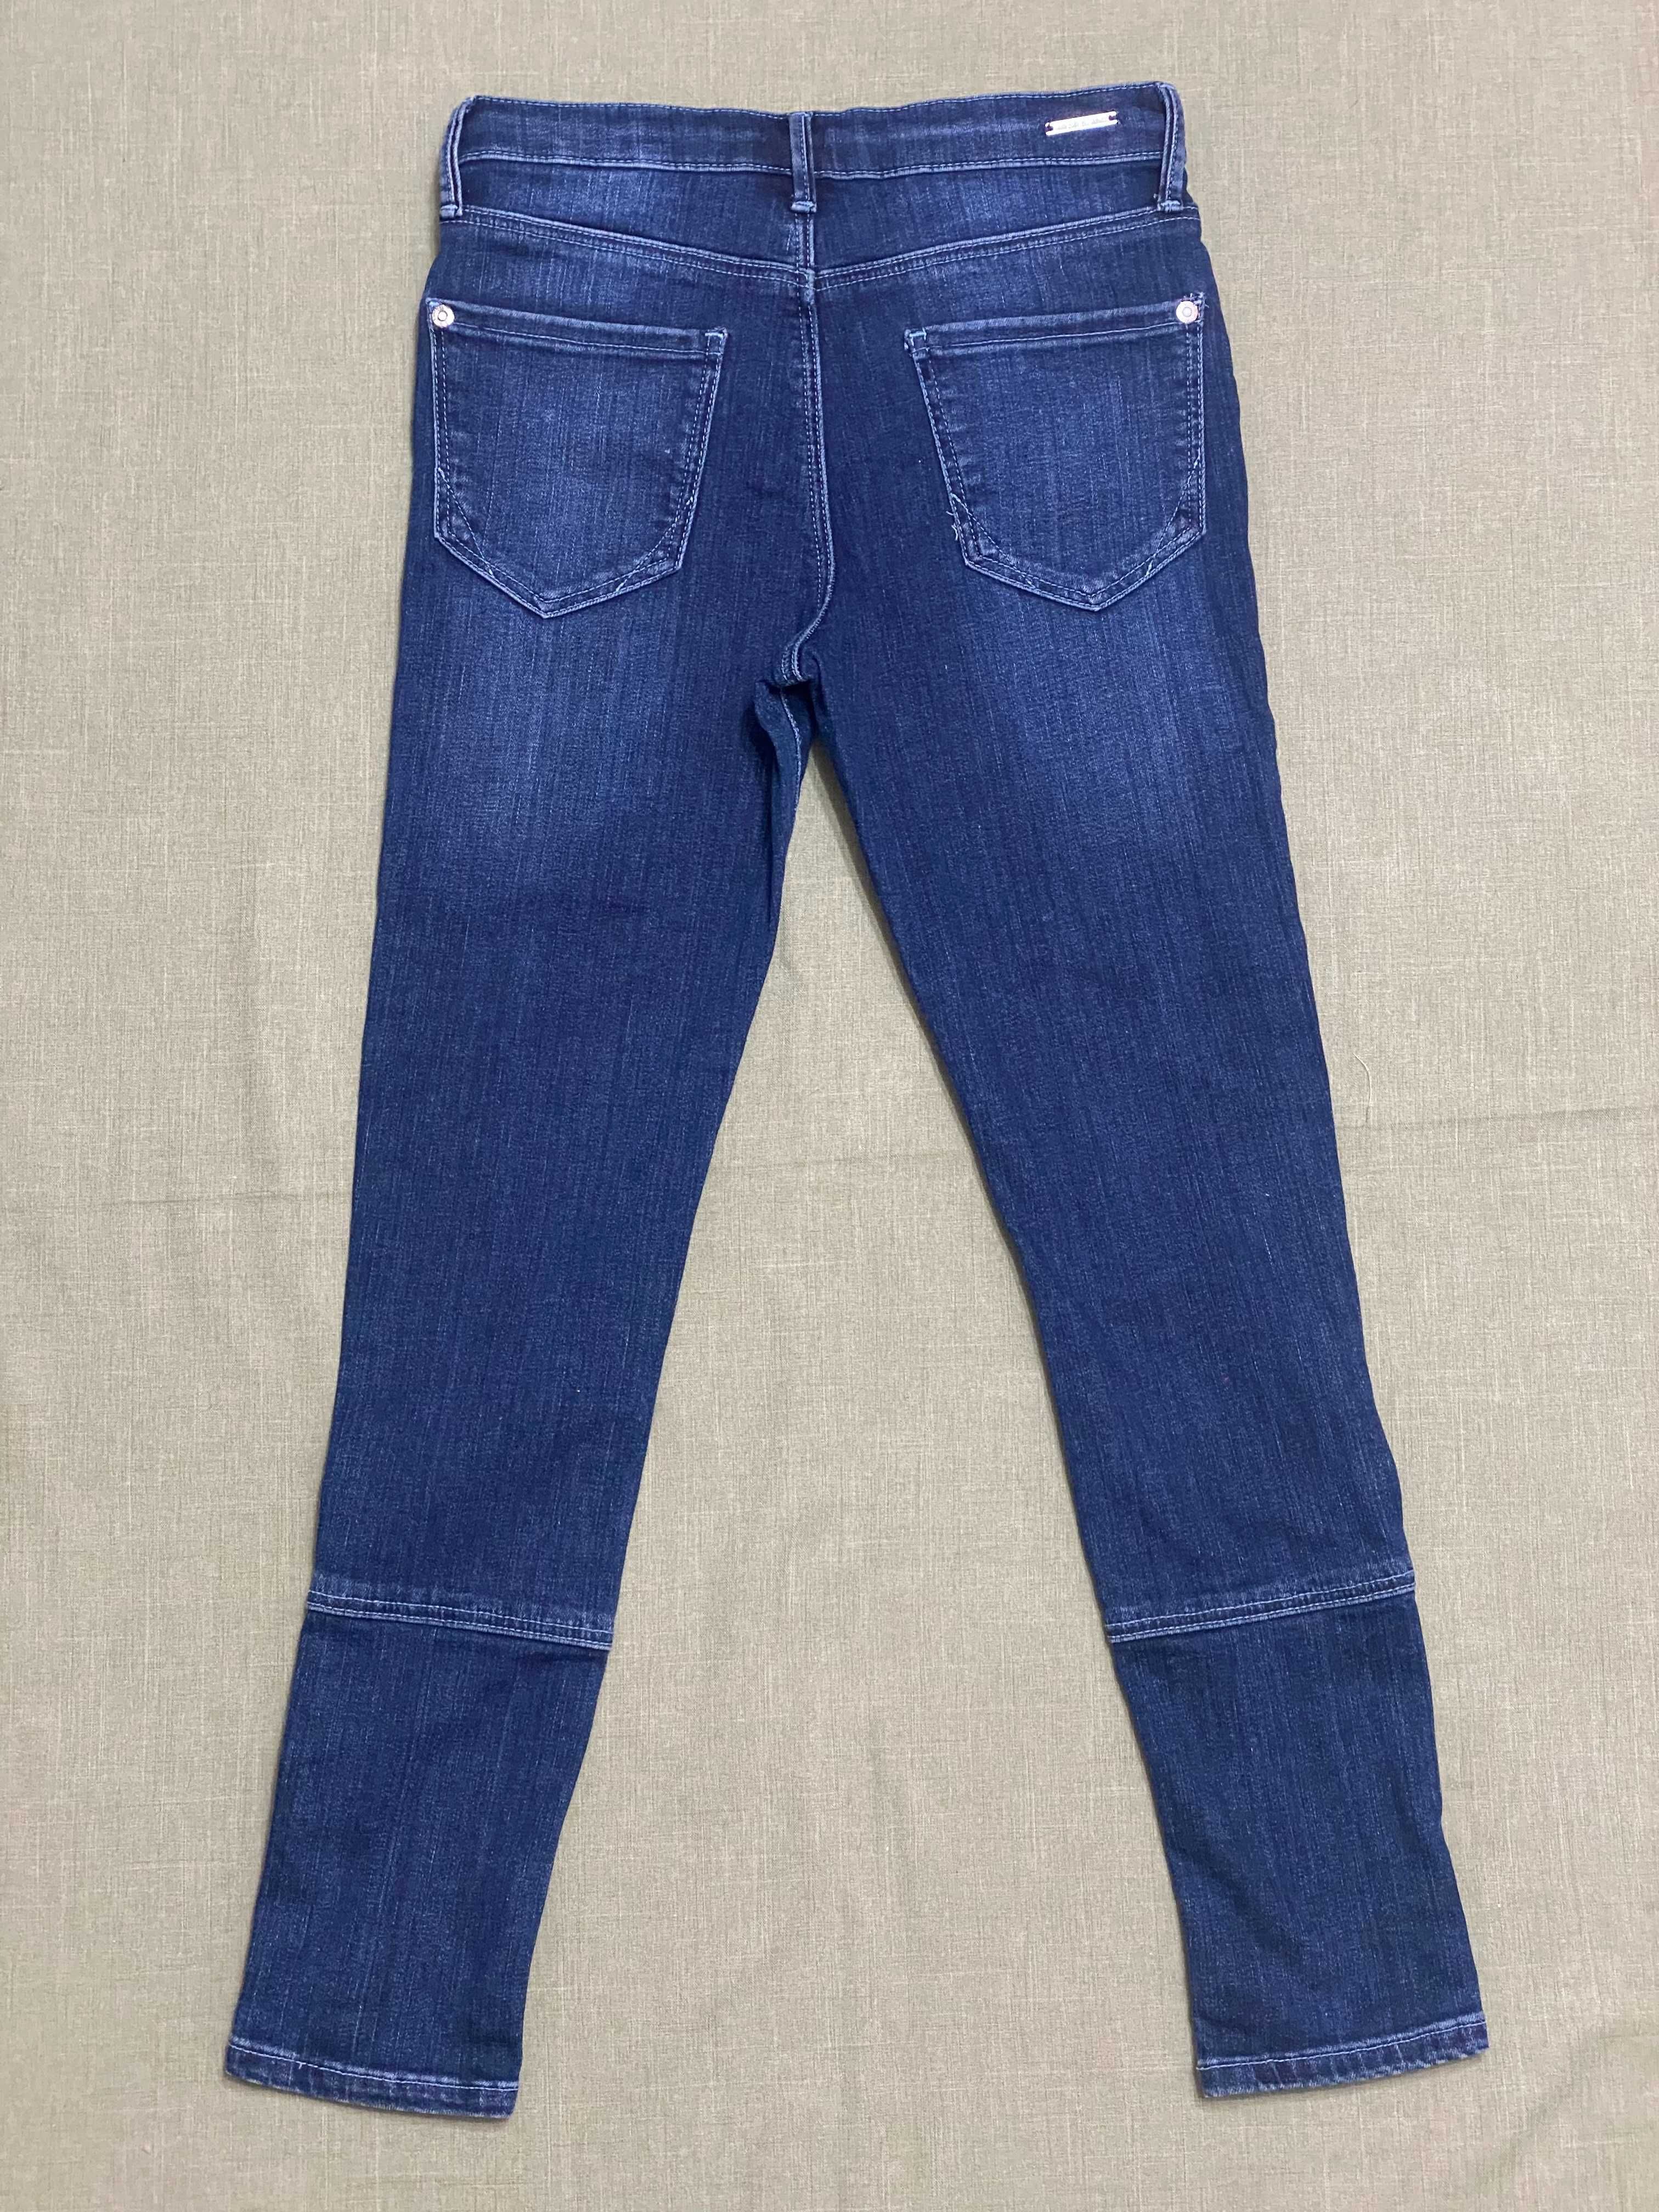 Набор одежды девочке 10-11 лет 140 см укороченный лонгслив и джинсы